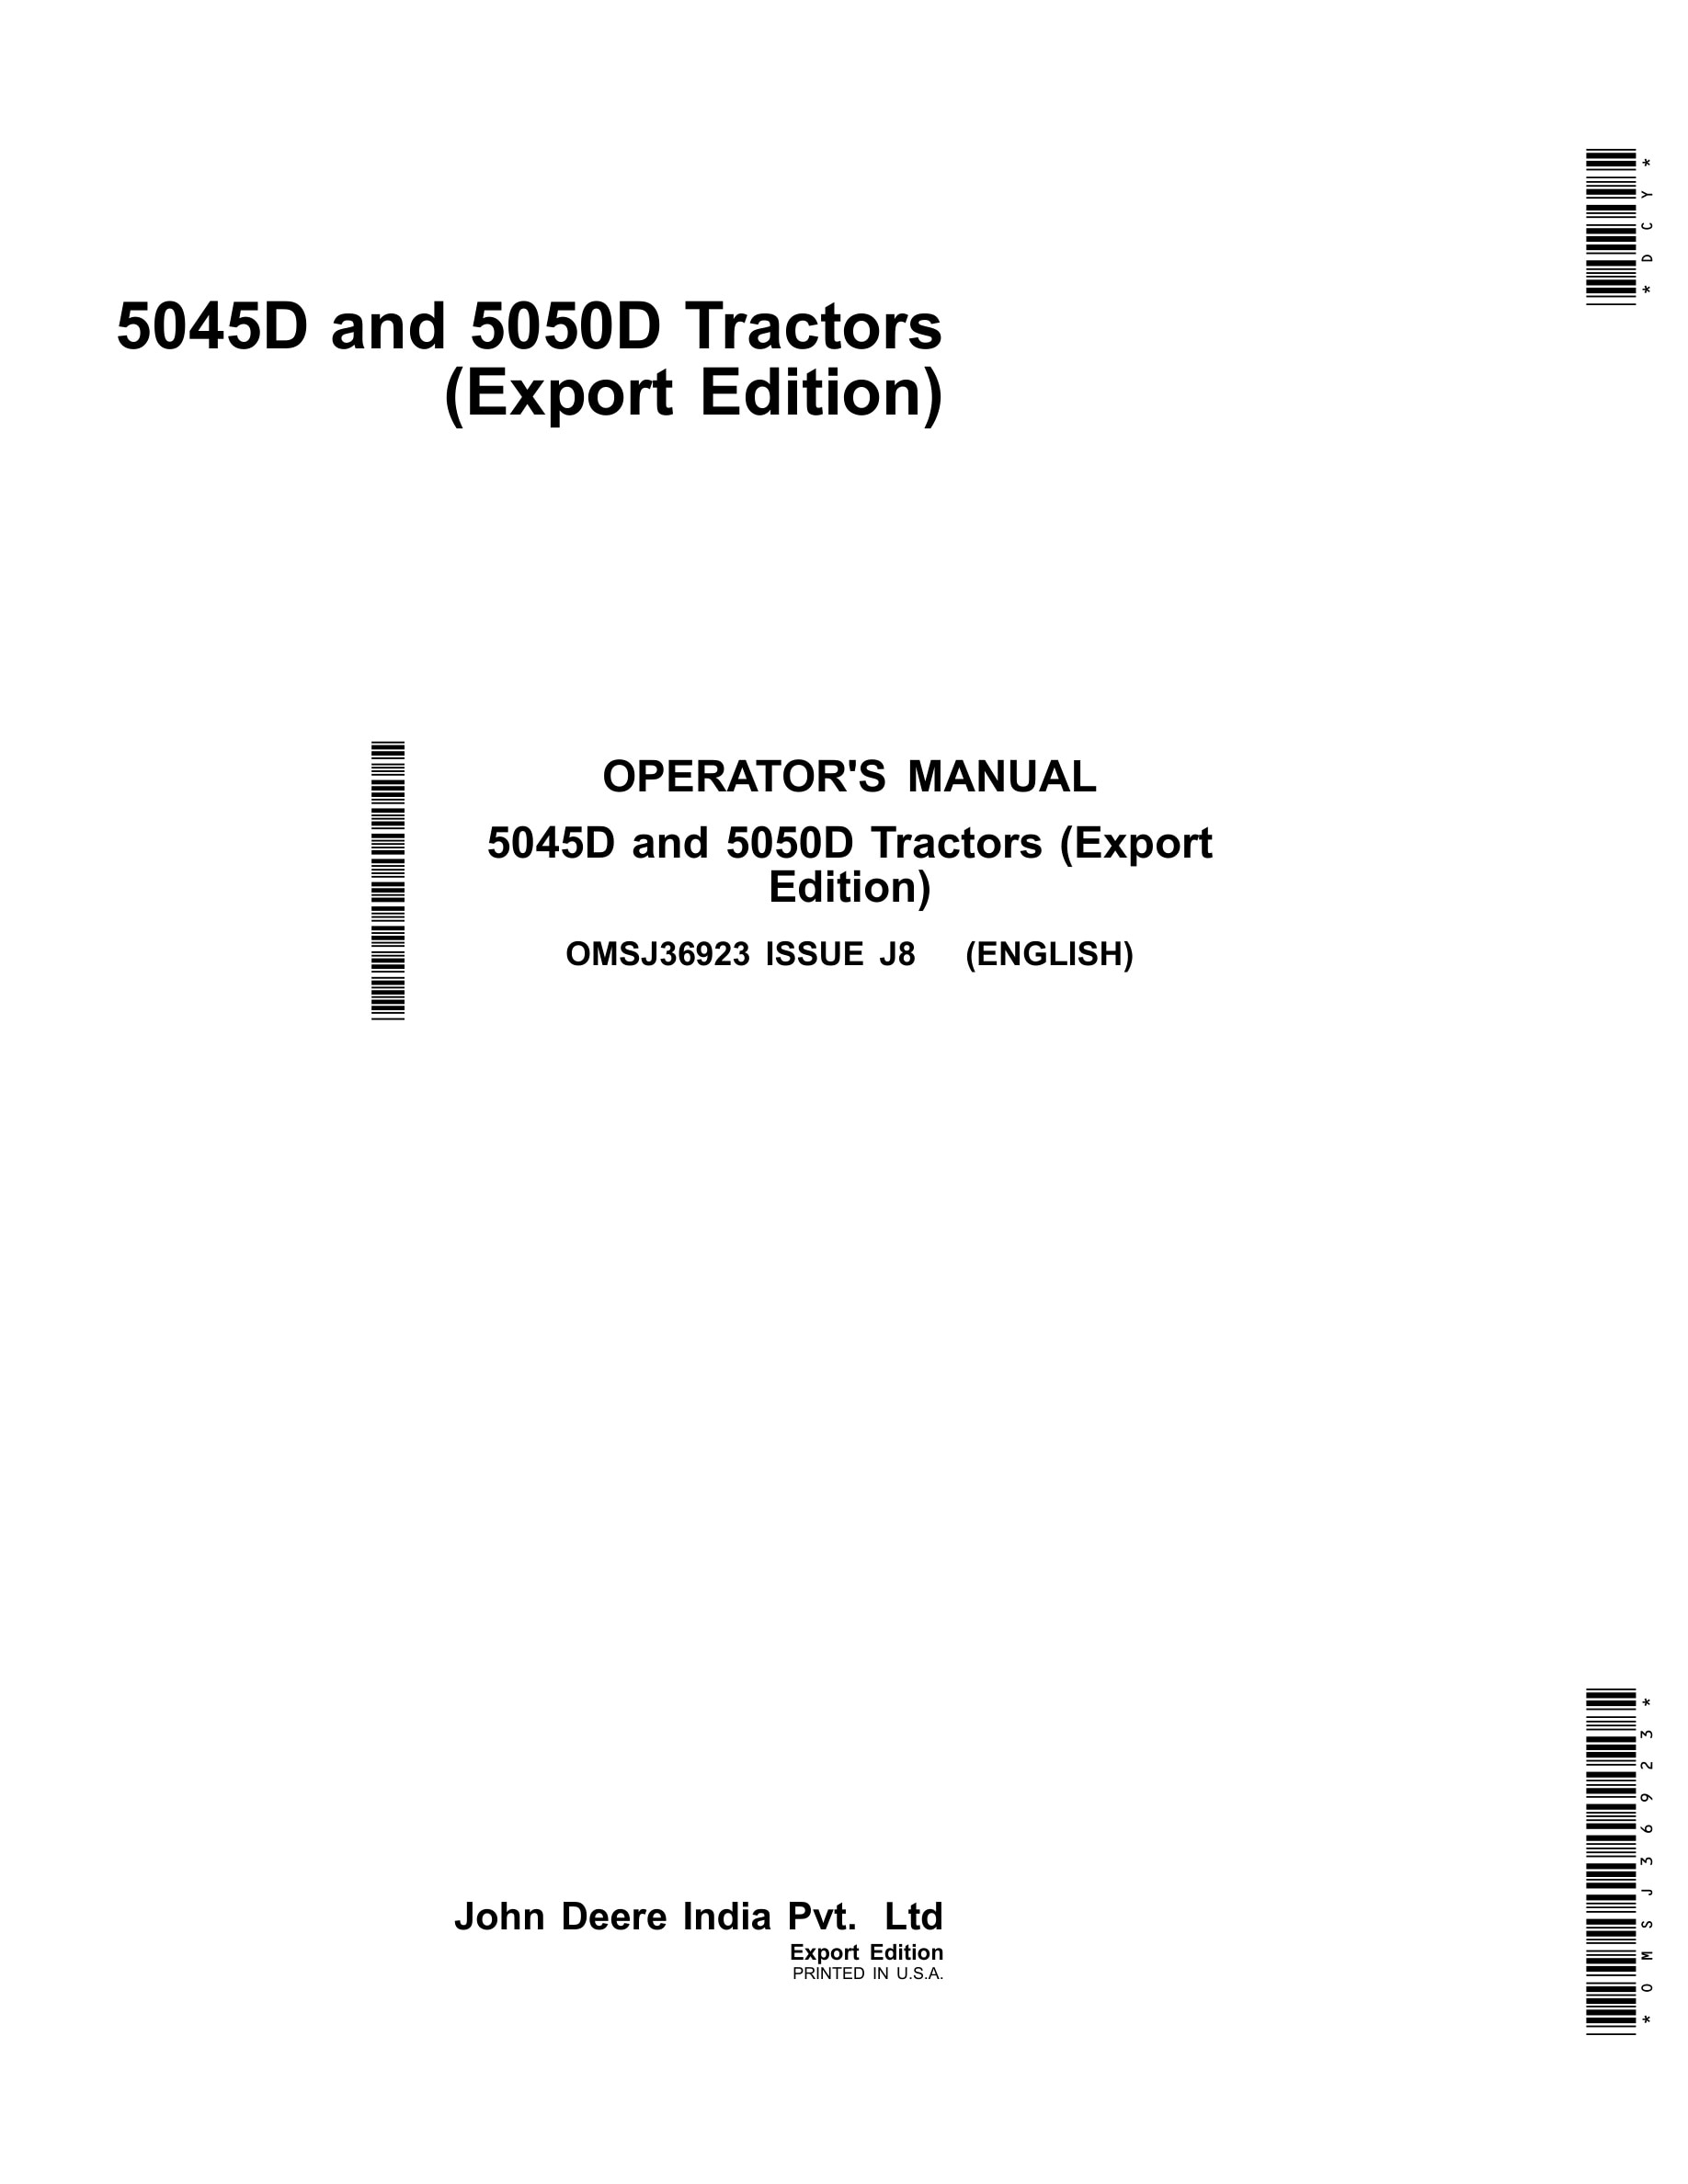 John Deere 5045d And 5050d Tractors Operator Manuals OMSJ36923-1